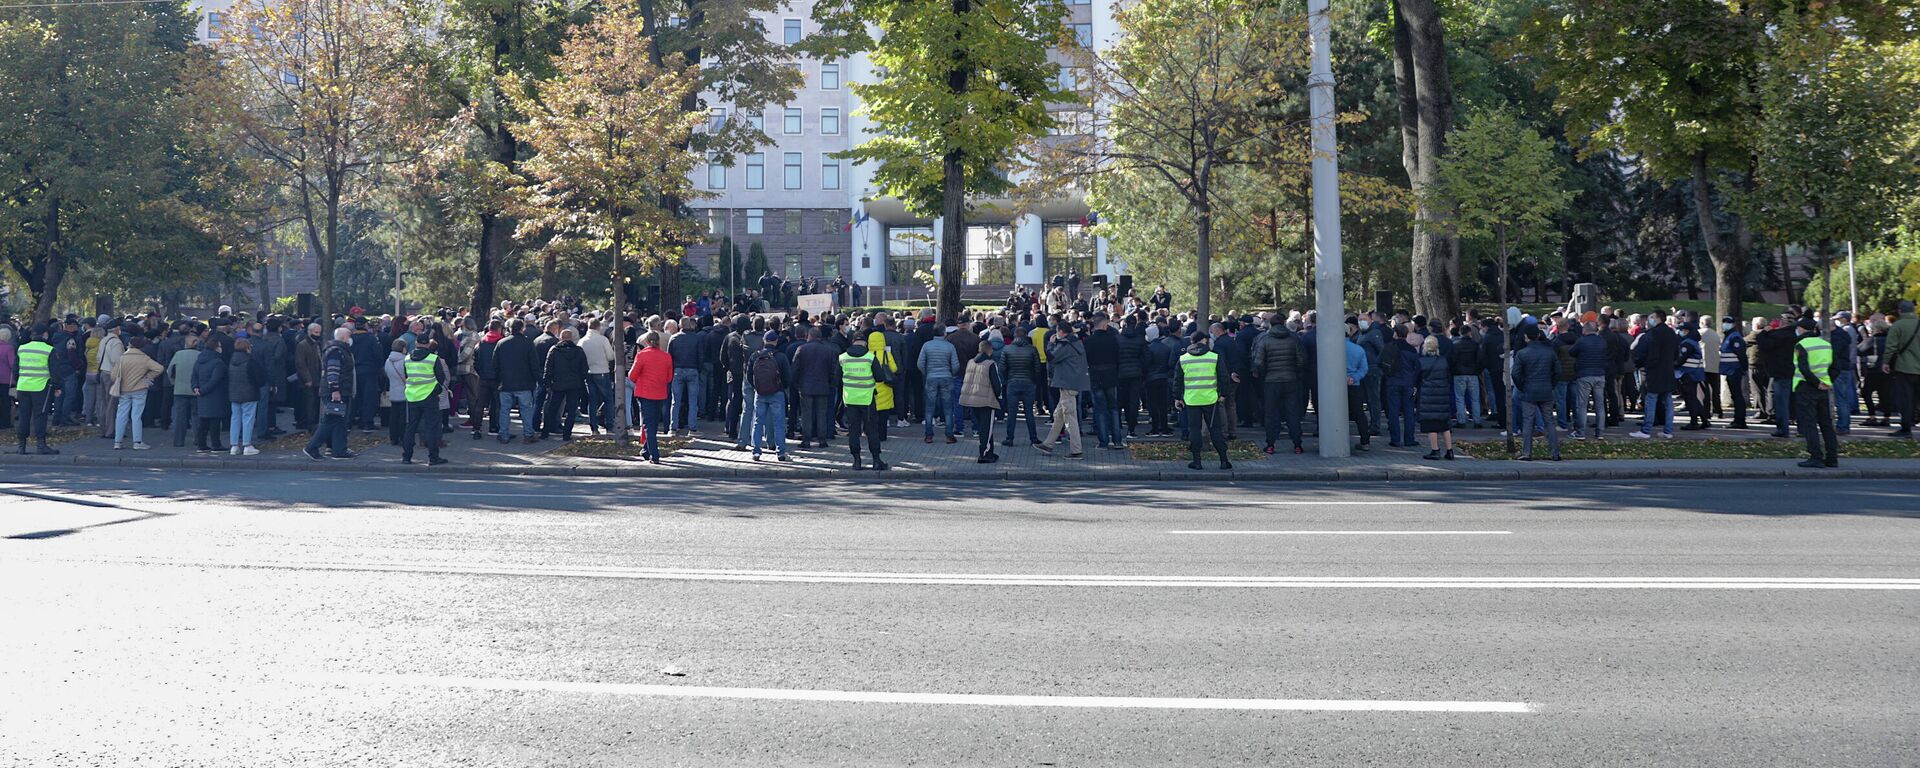 В Кишиневе проходят массовые протесты оппозиции - Sputnik Молдова, 1920, 10.10.2021